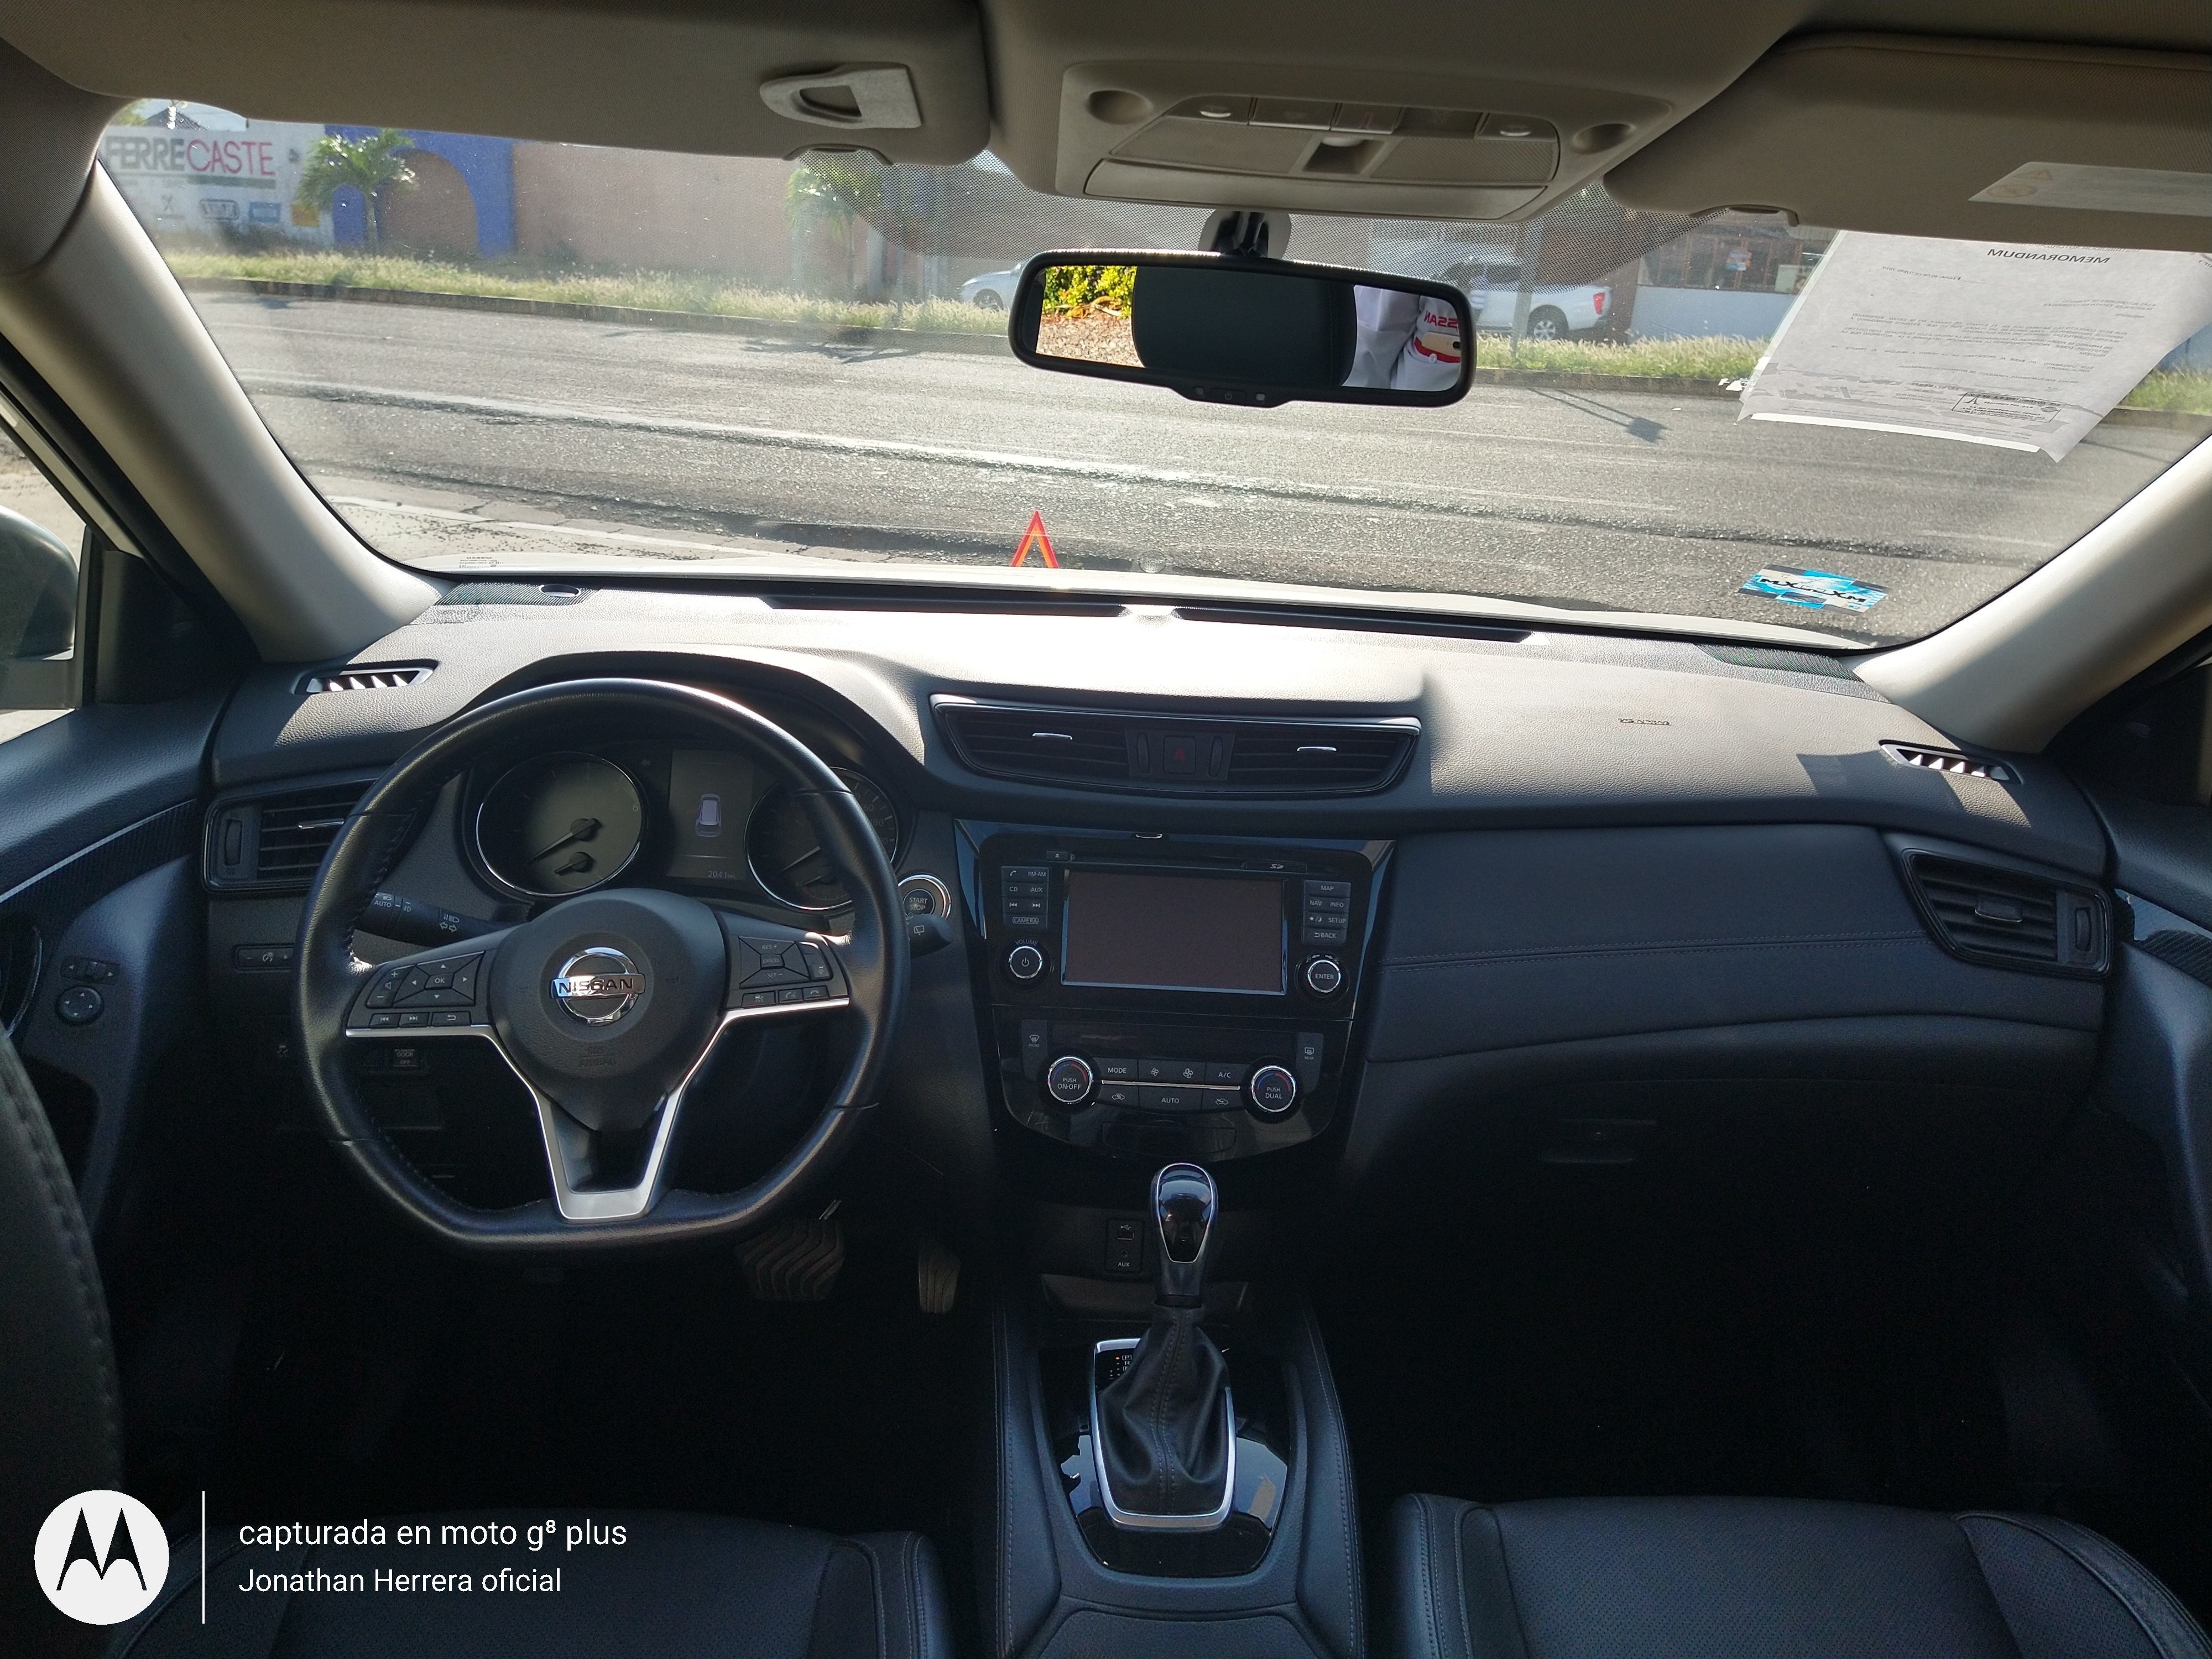 2019 Nissan XTrail EXCLUSIVE L4 2.5L 170 CP 5 PUERTAS AUT PIEL BA AA QC